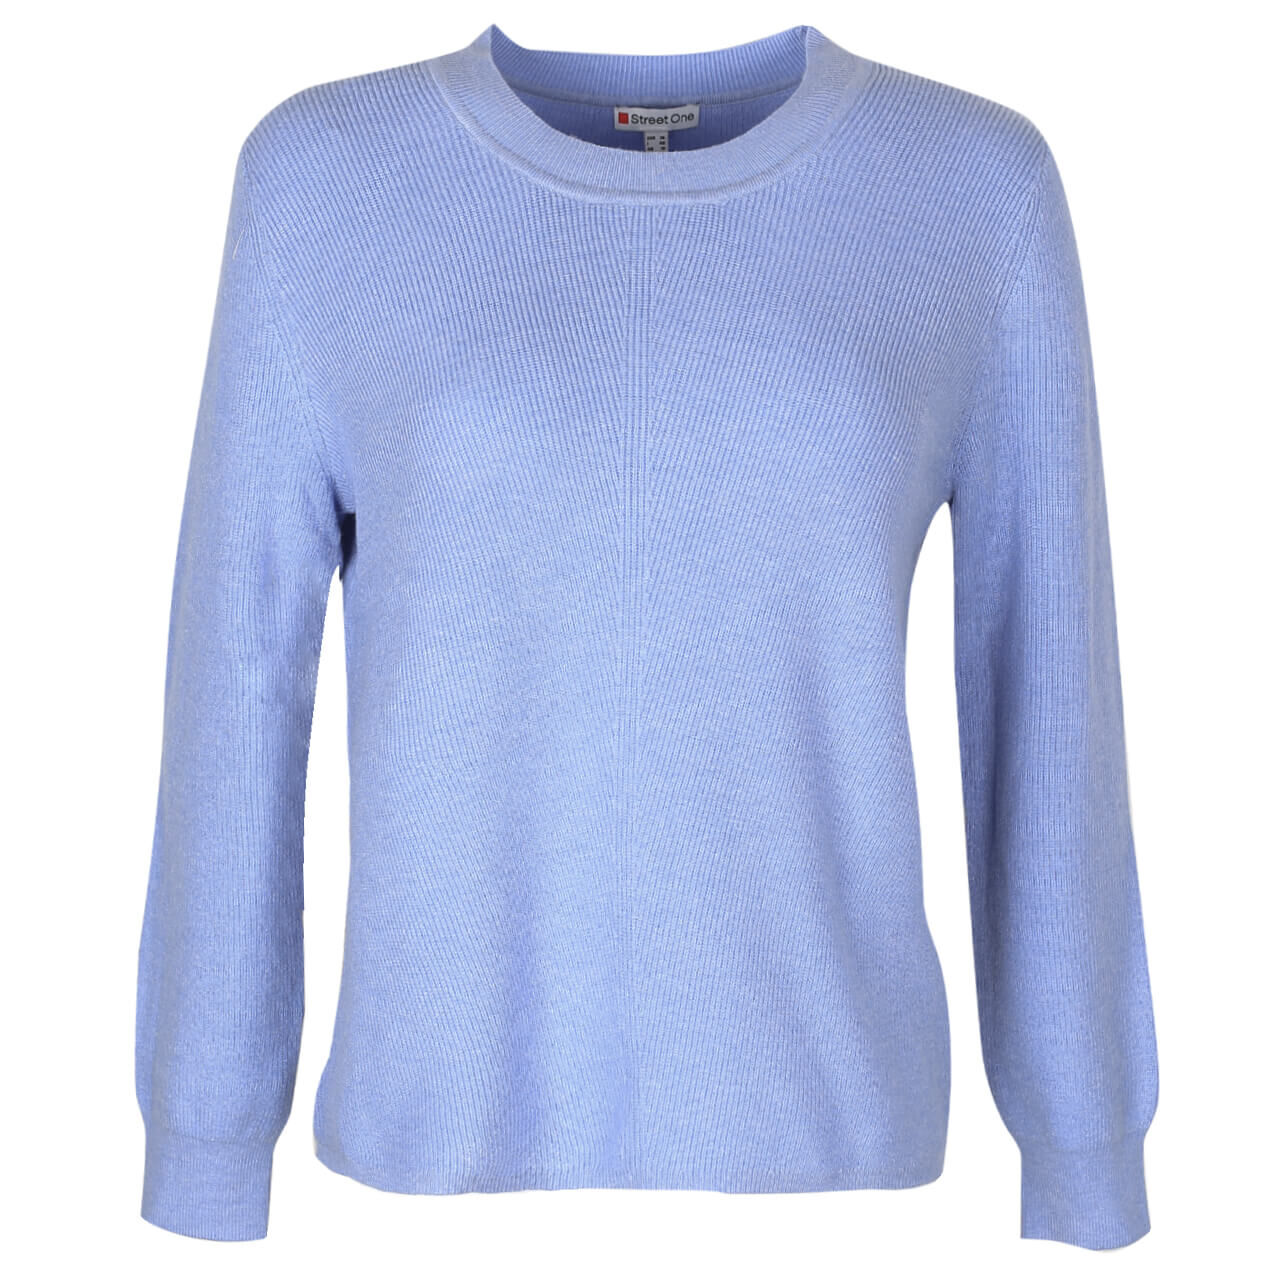 Street One Pullover für Damen in Hellblau meliert, FarbNr.: 13467